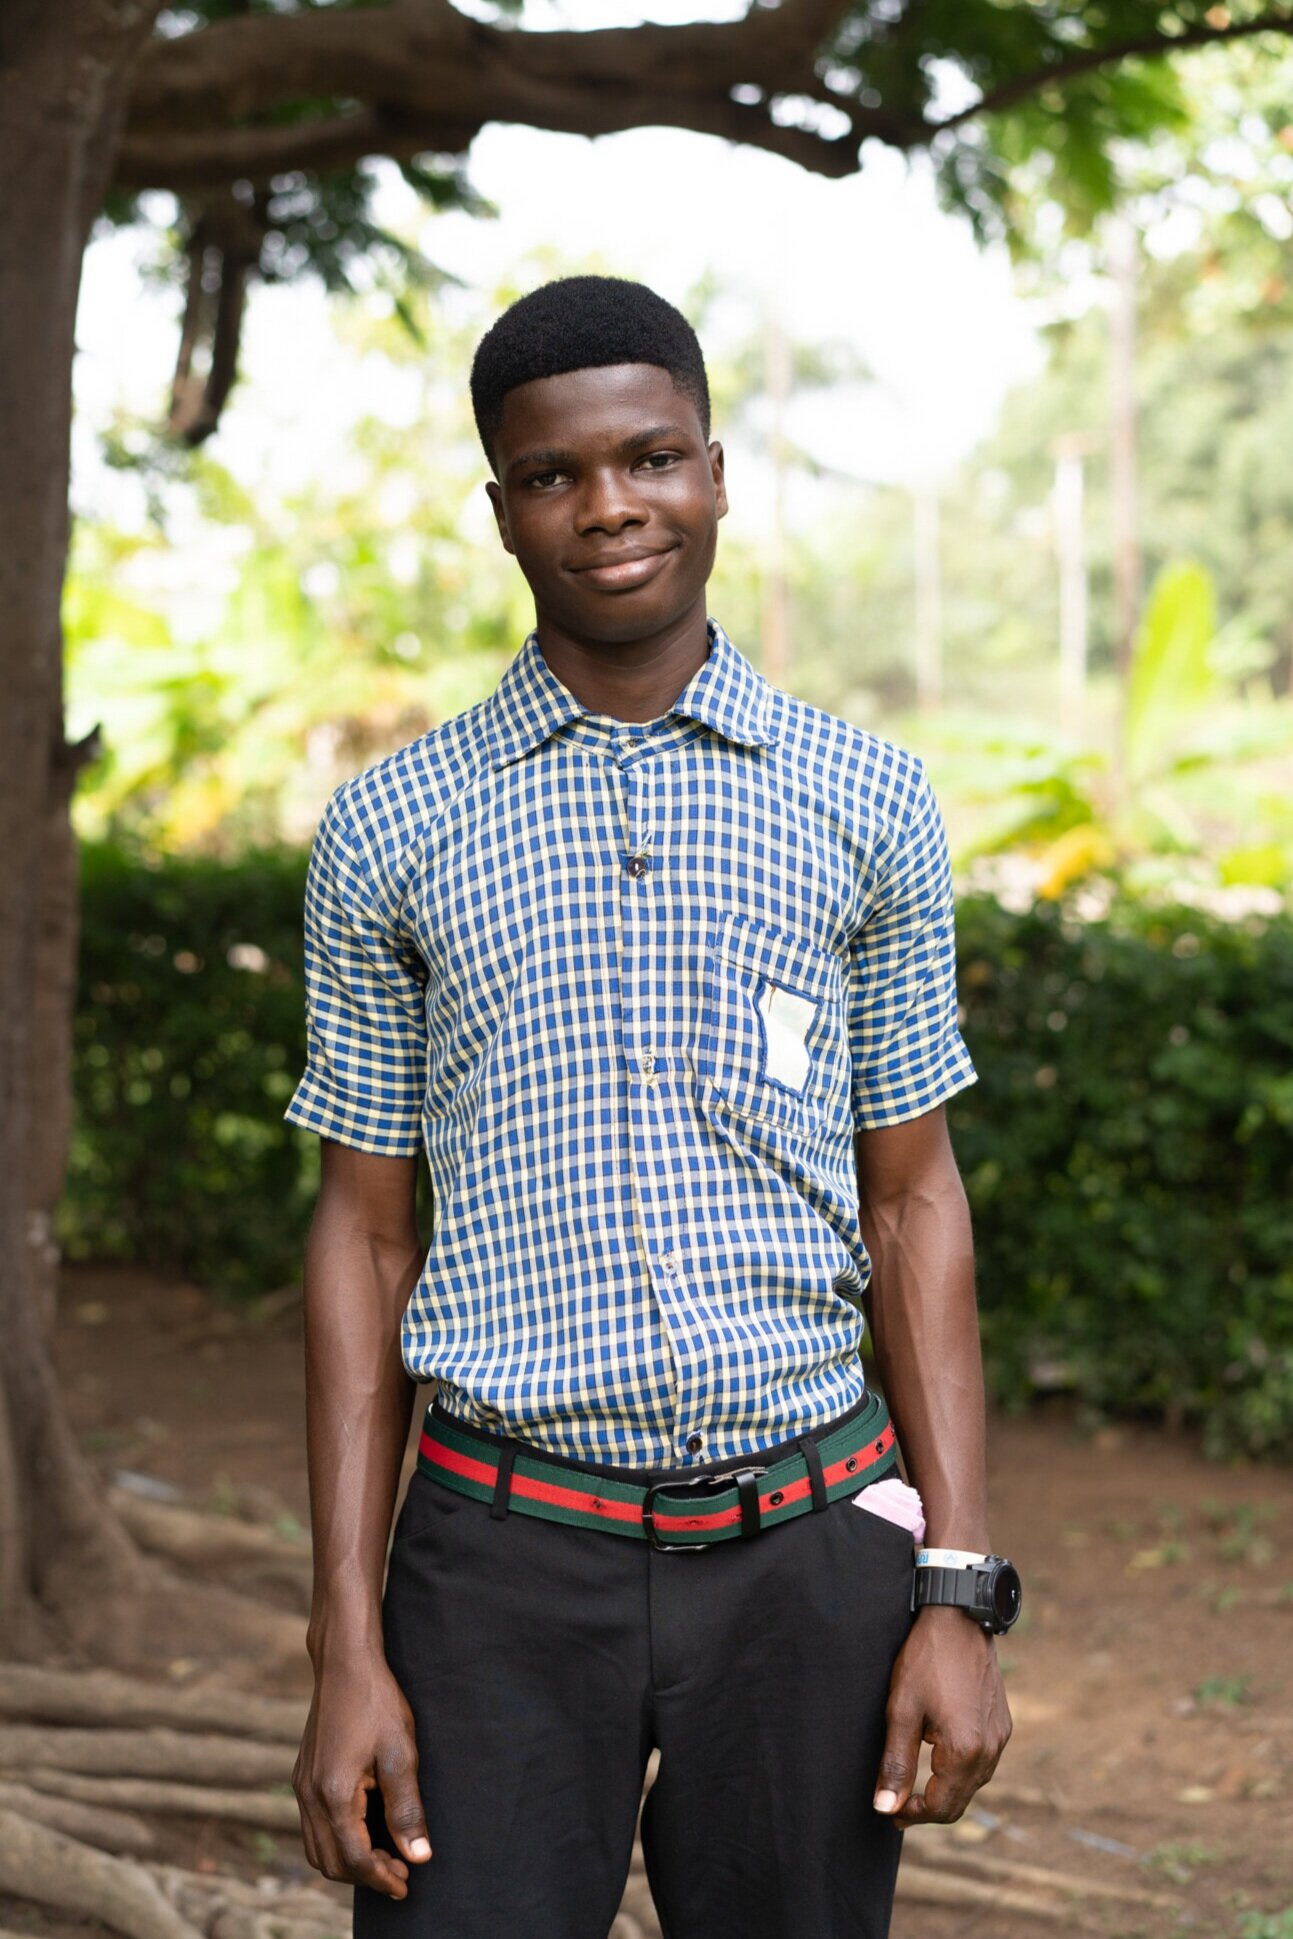  Philip in his school uniform, 2019 